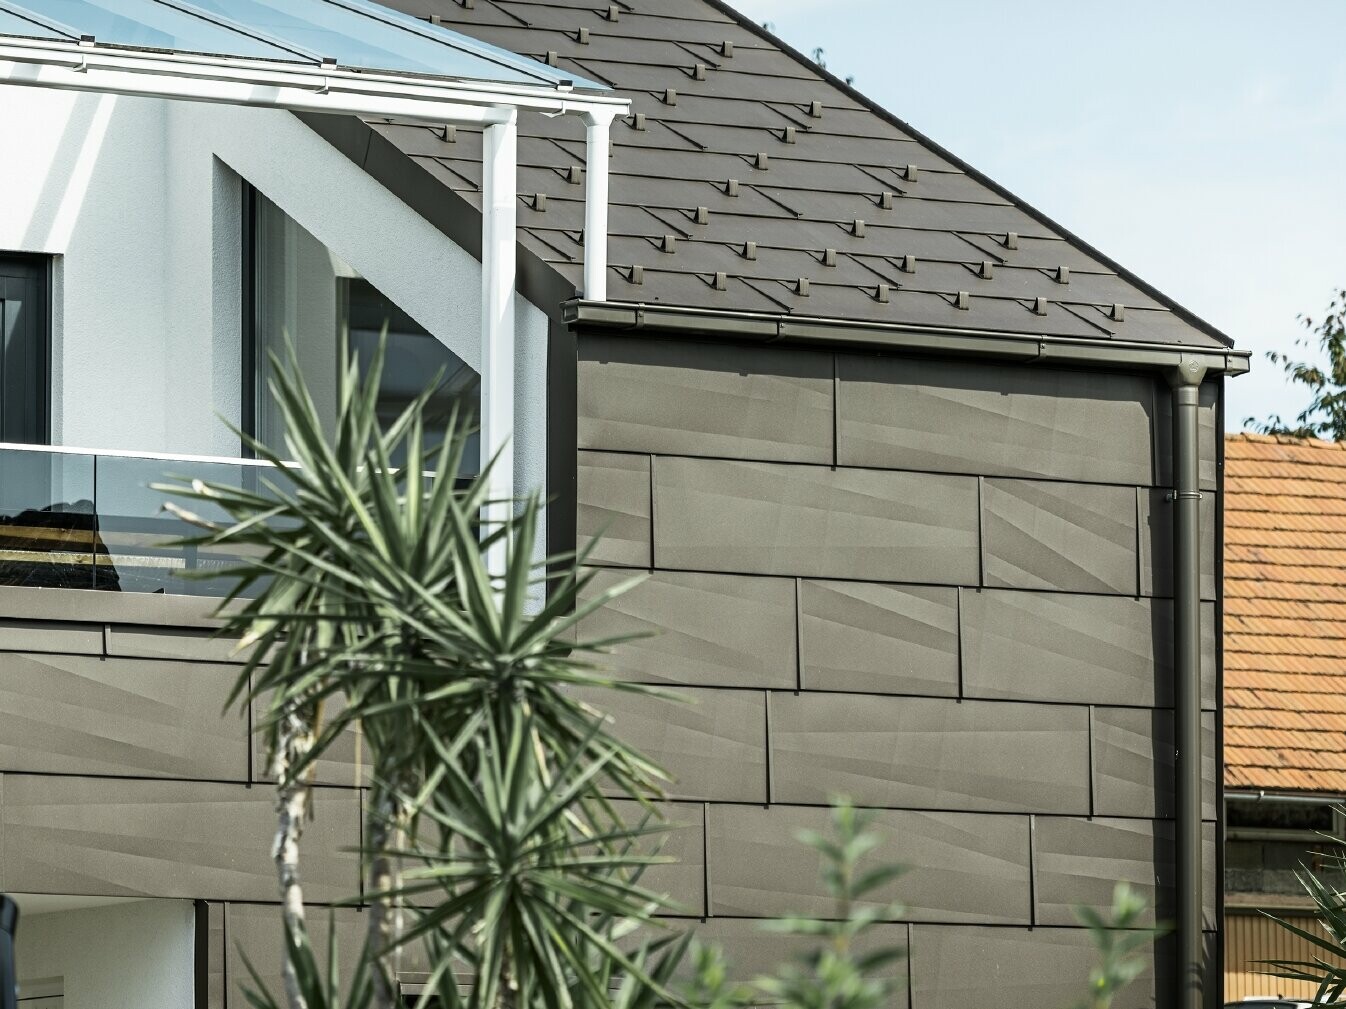 Prizidek s strešno teraso s celovitim sistemom PREFA, na strehi in fasadi so uporabljeni strešni in fasadni paneli PREFA FX.12. Poleg tega je uporabljen pravokotni žleb PREFA z odtočno cevjo in bogato paleto dodatnih elementov v rjavi barvi za odvodnjavanje strehe.